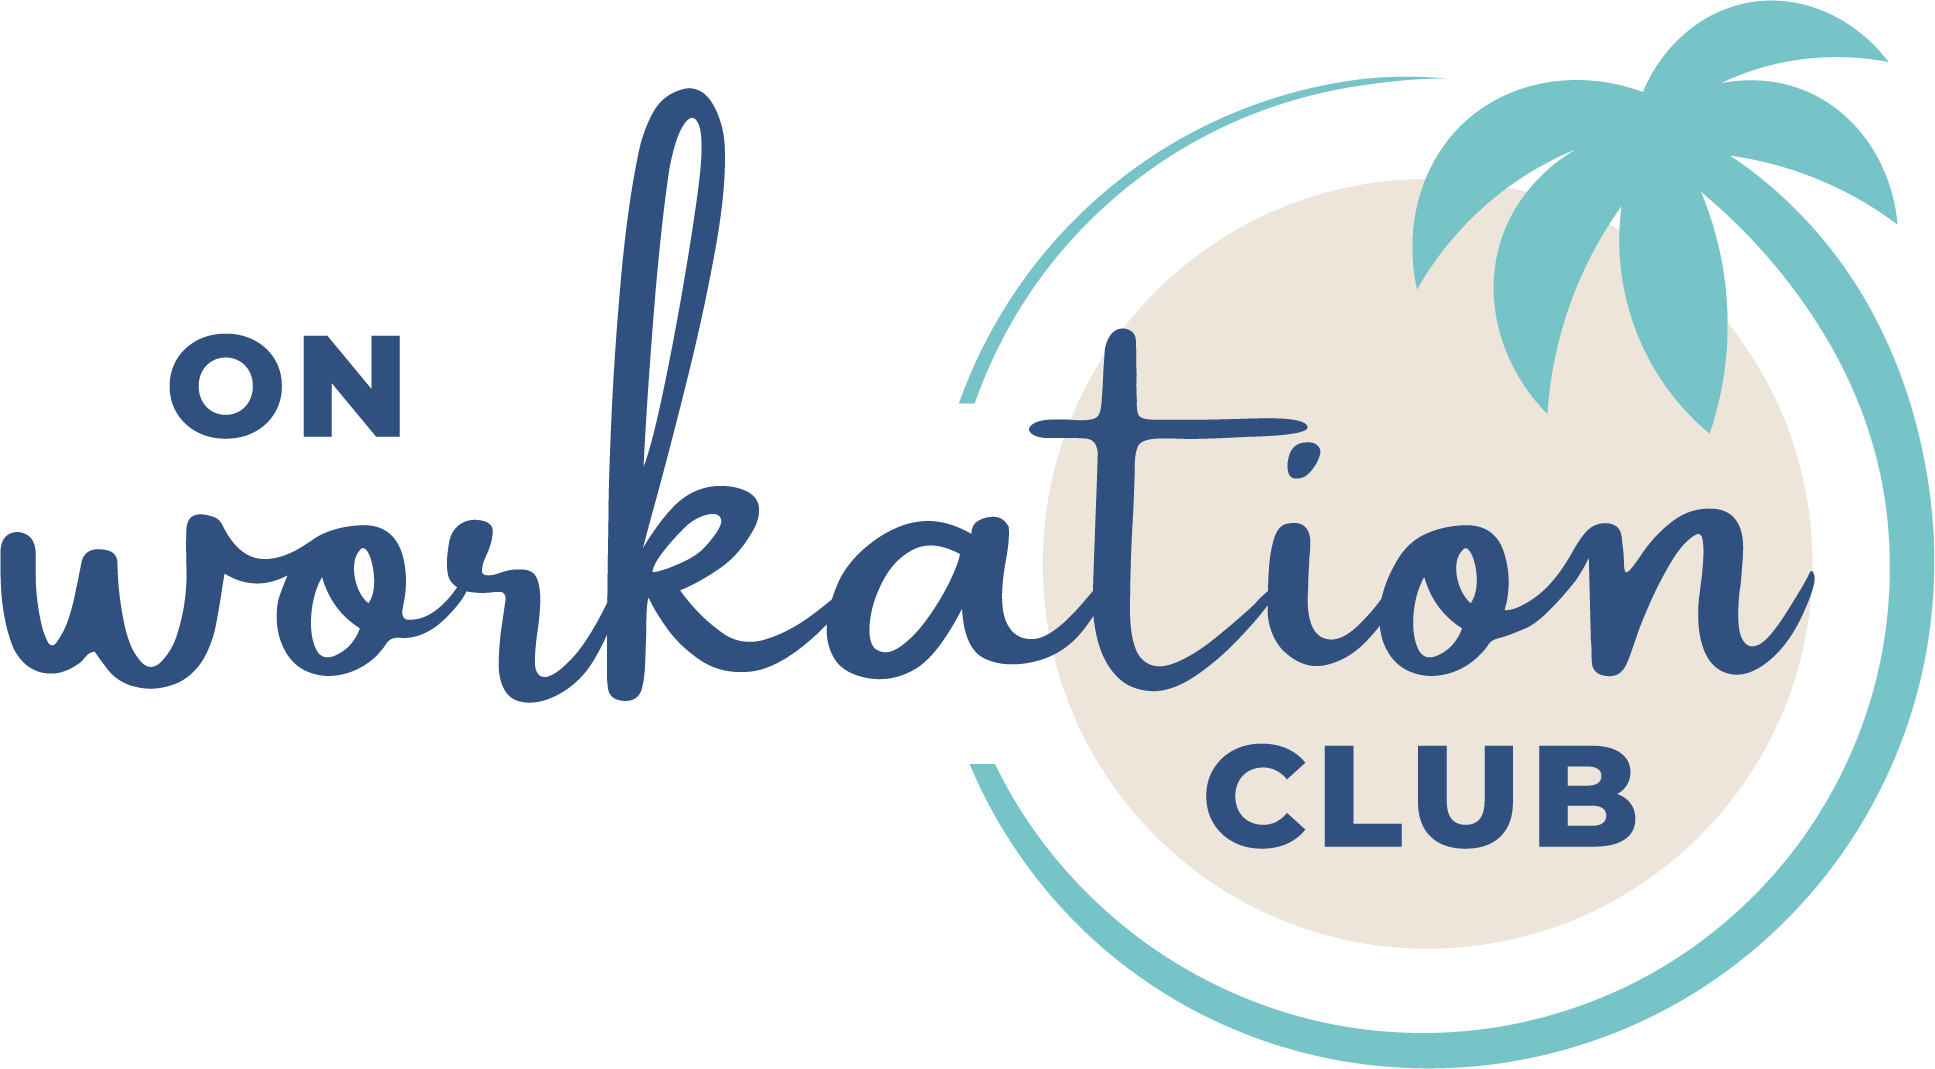 On WOrkation Club